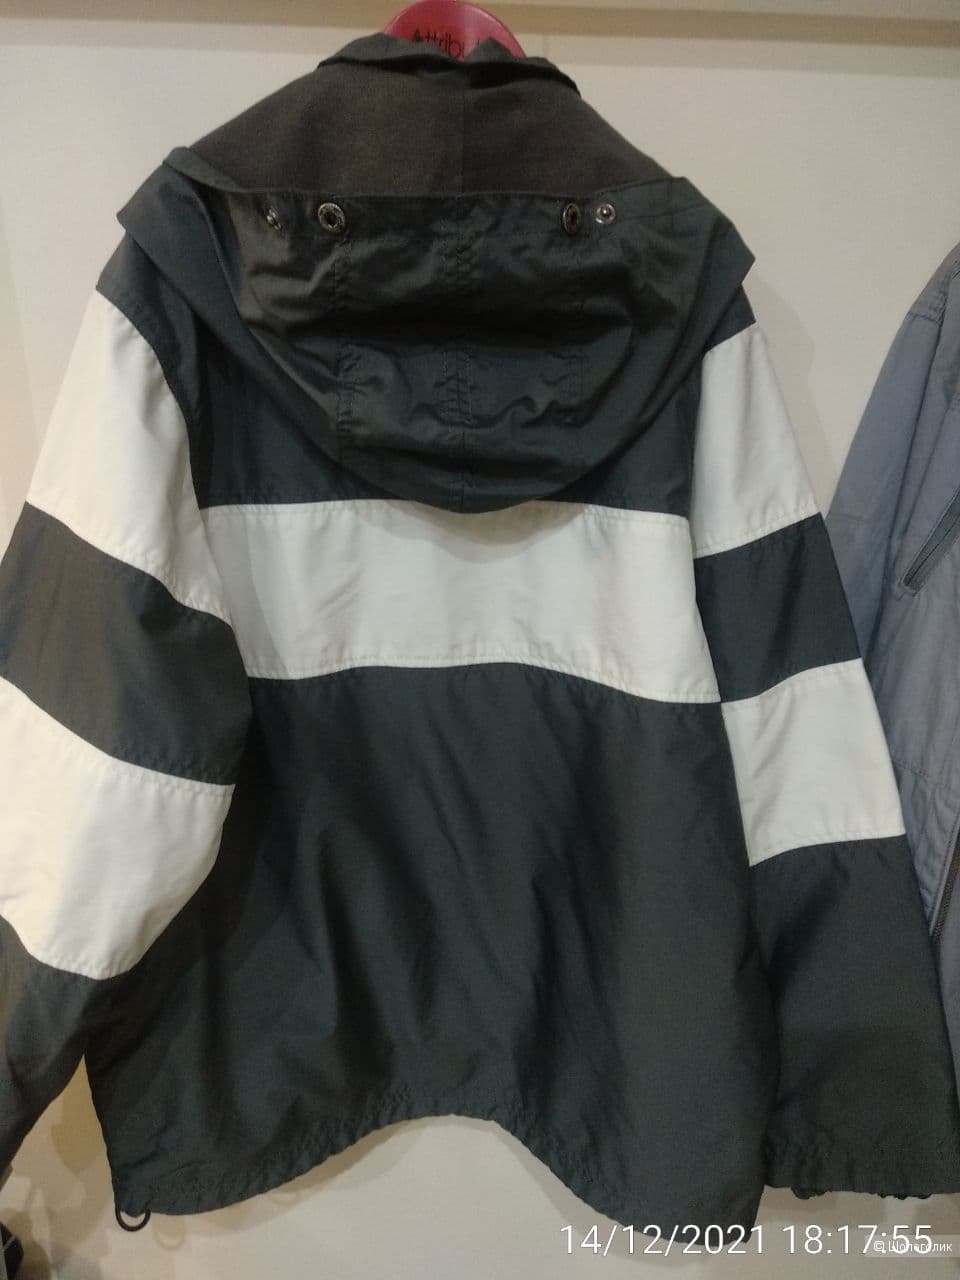 Куртка Pointer, 9-10 лет (140 см)